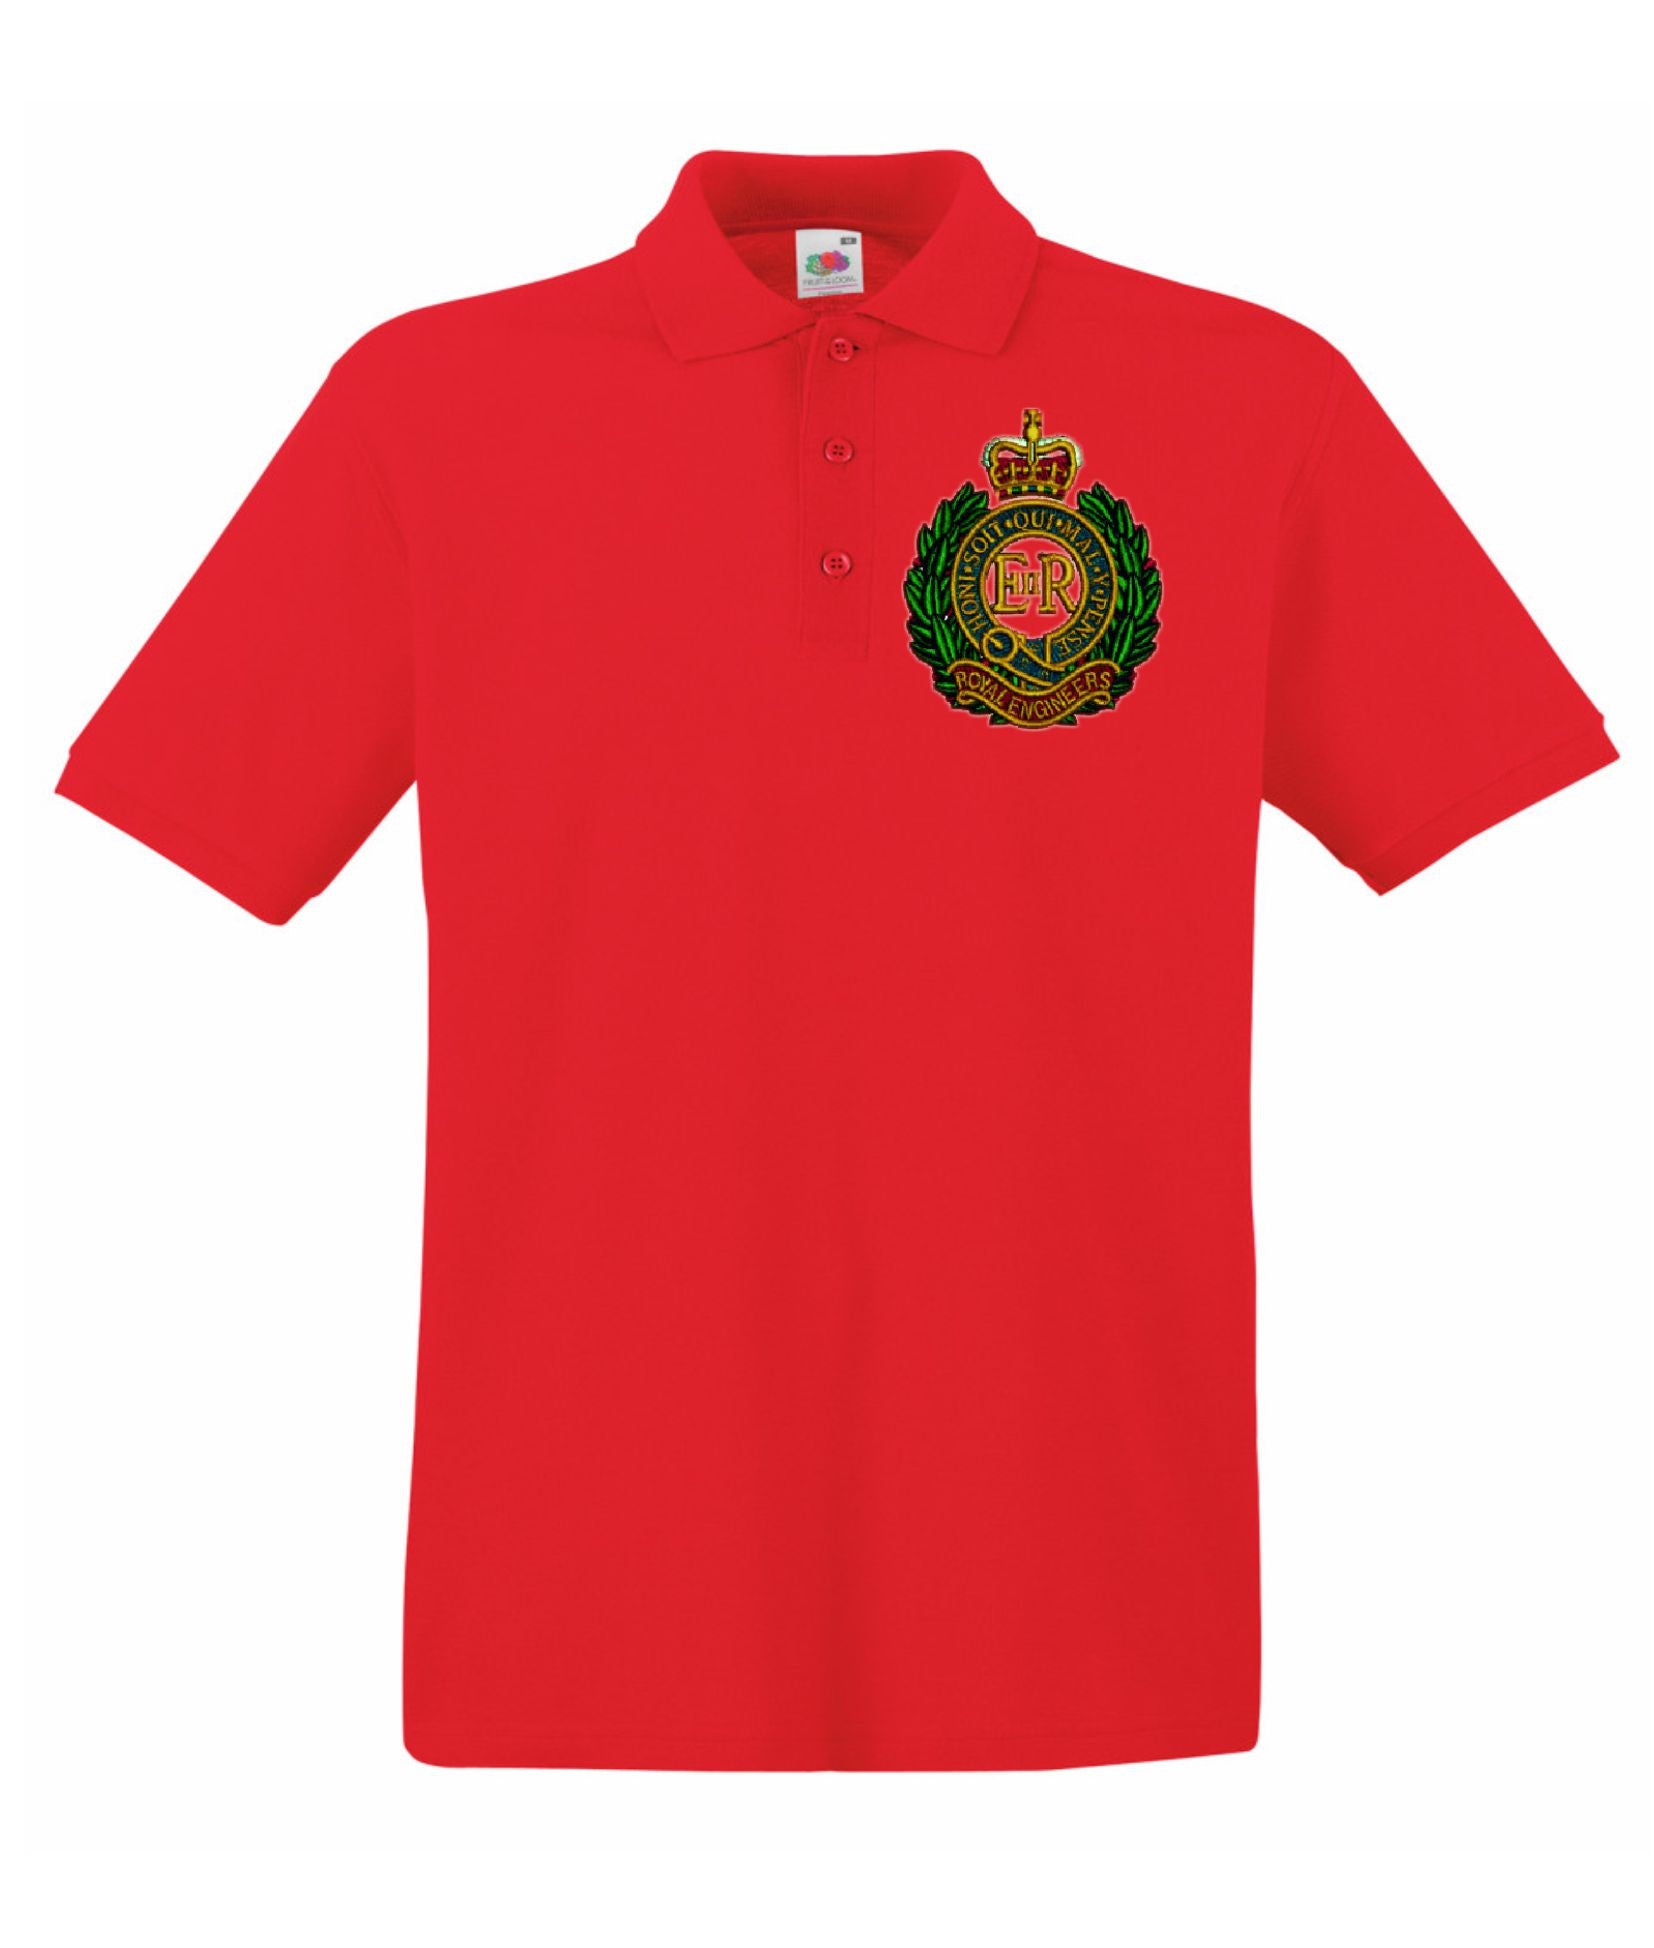 Royal Engineers Polo Shirts